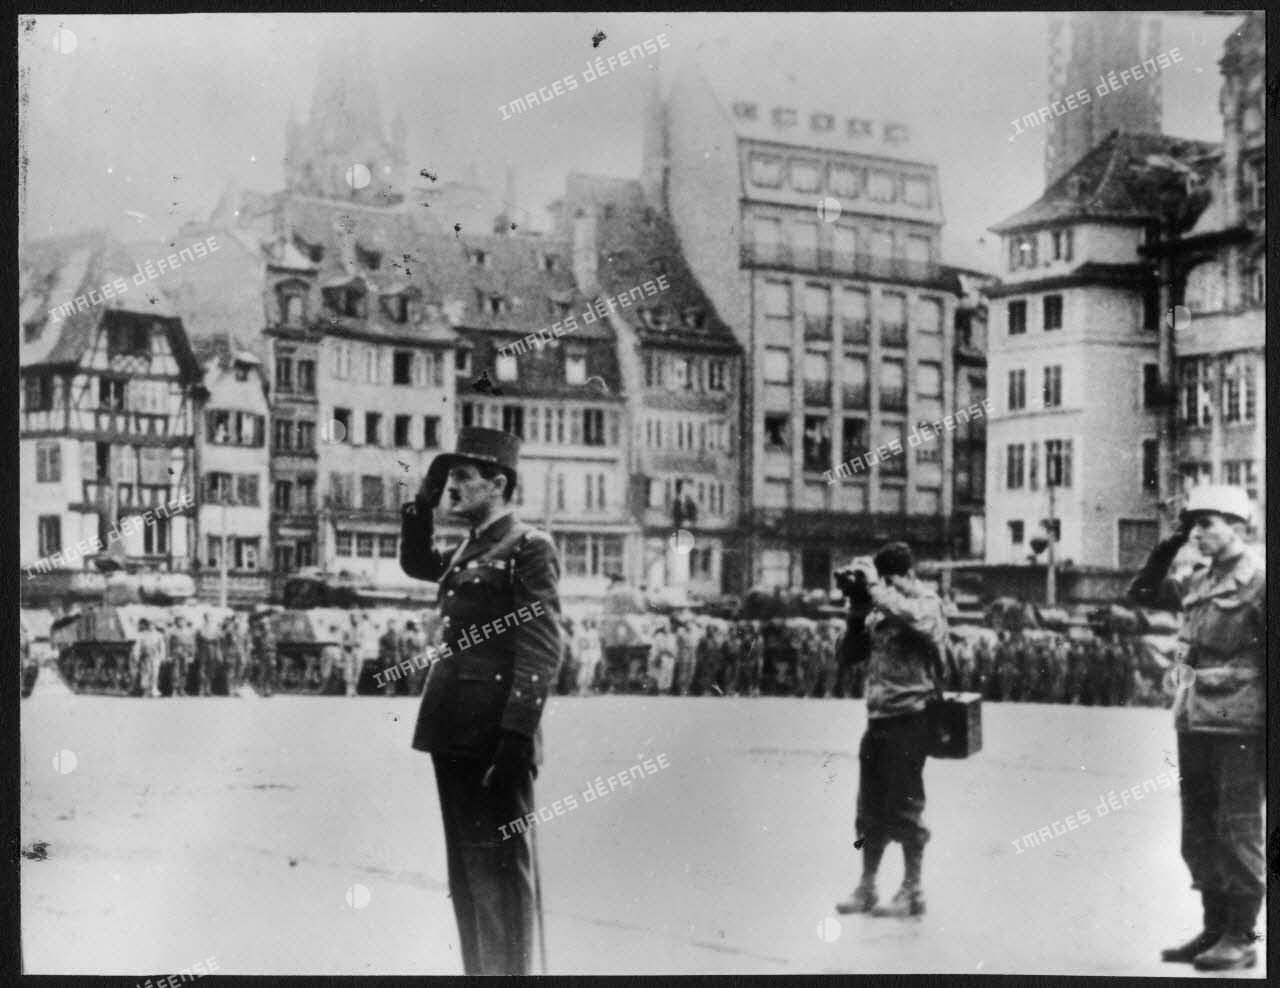 Strasbourg, le 26 novembre 1944, le général Leclerc passe en revue des éléments de la 2e DB (division blindée) place Kléber et salue pendant l'exécution de la Marseillaise.